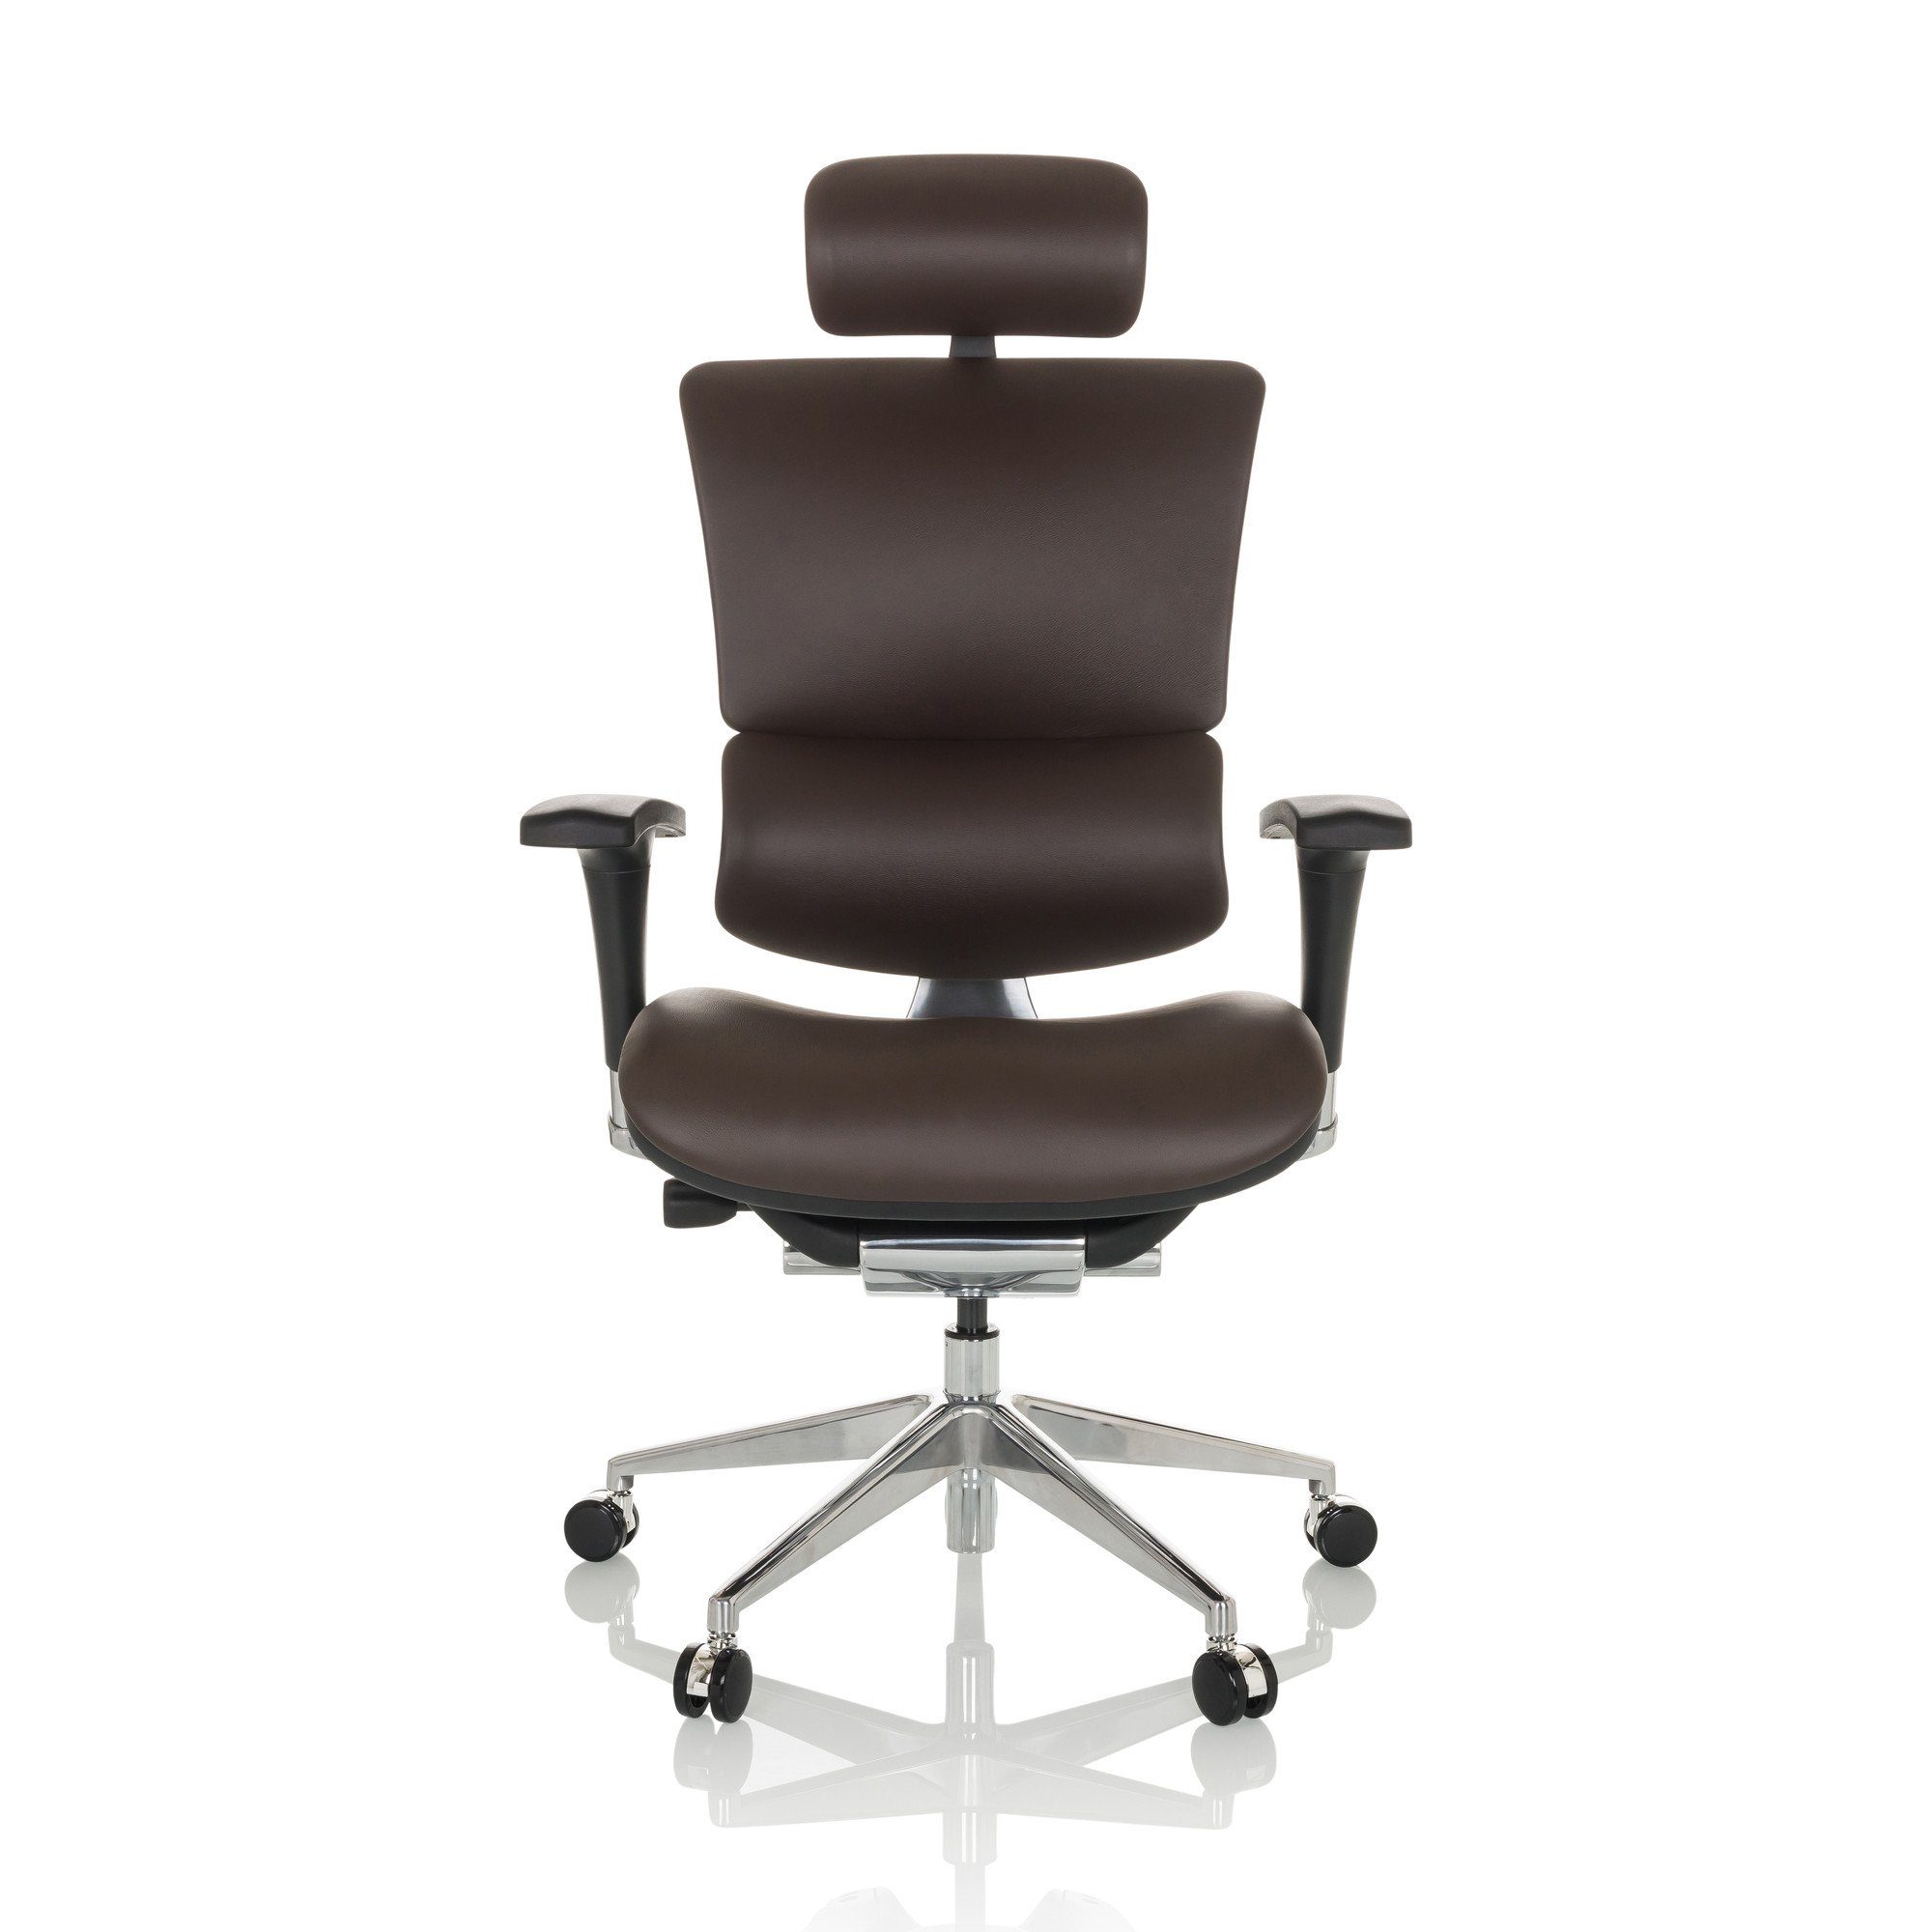 wird gebraucht hjh OFFICE Drehstuhl Luxus Dunkelbraun ERGO-U2 (1 Bürostuhl ergonomisch Leder L St), Chefsessel